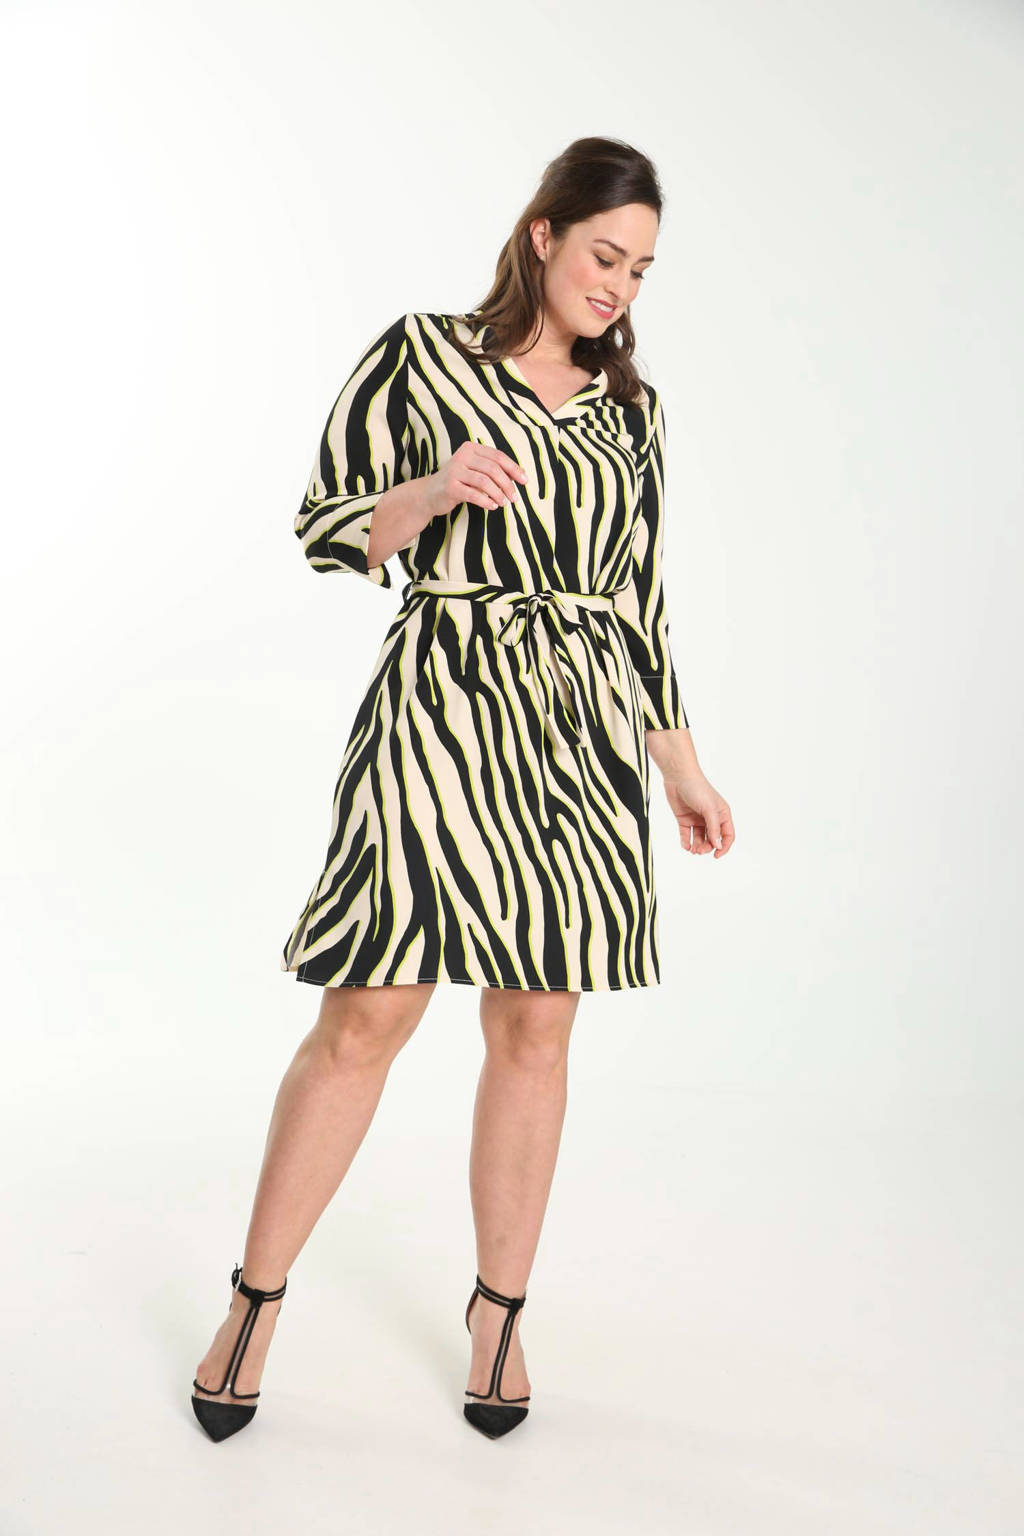 PROMISS jurk met zebraprint en ceintuur zwart/wit/geel